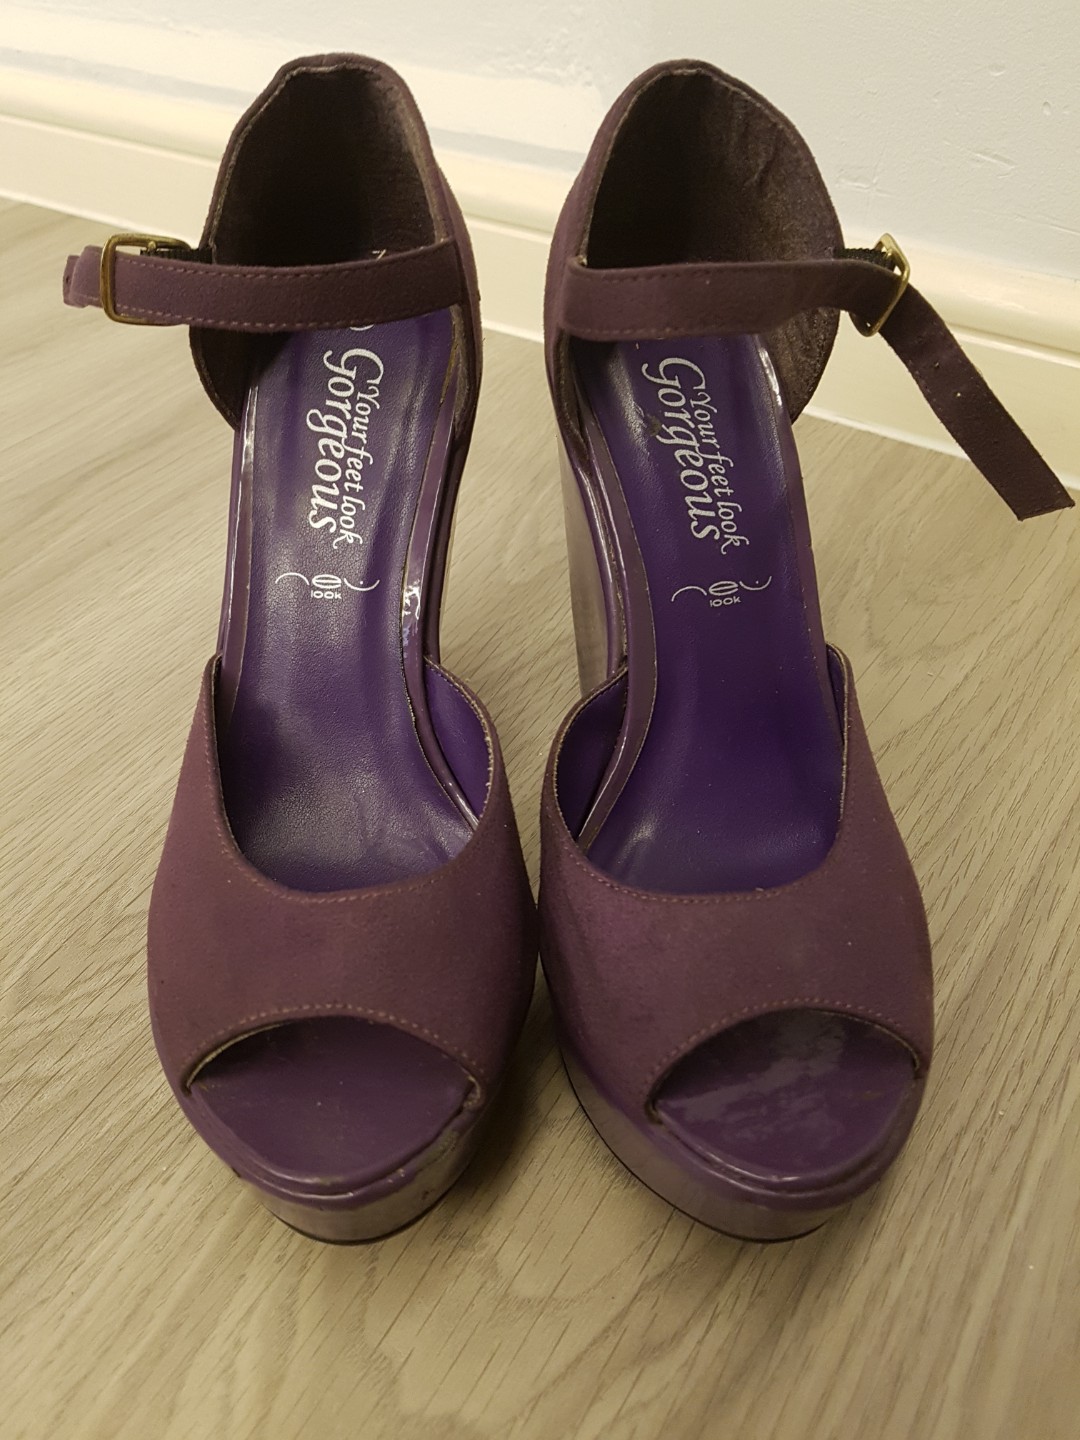 purple heels new look